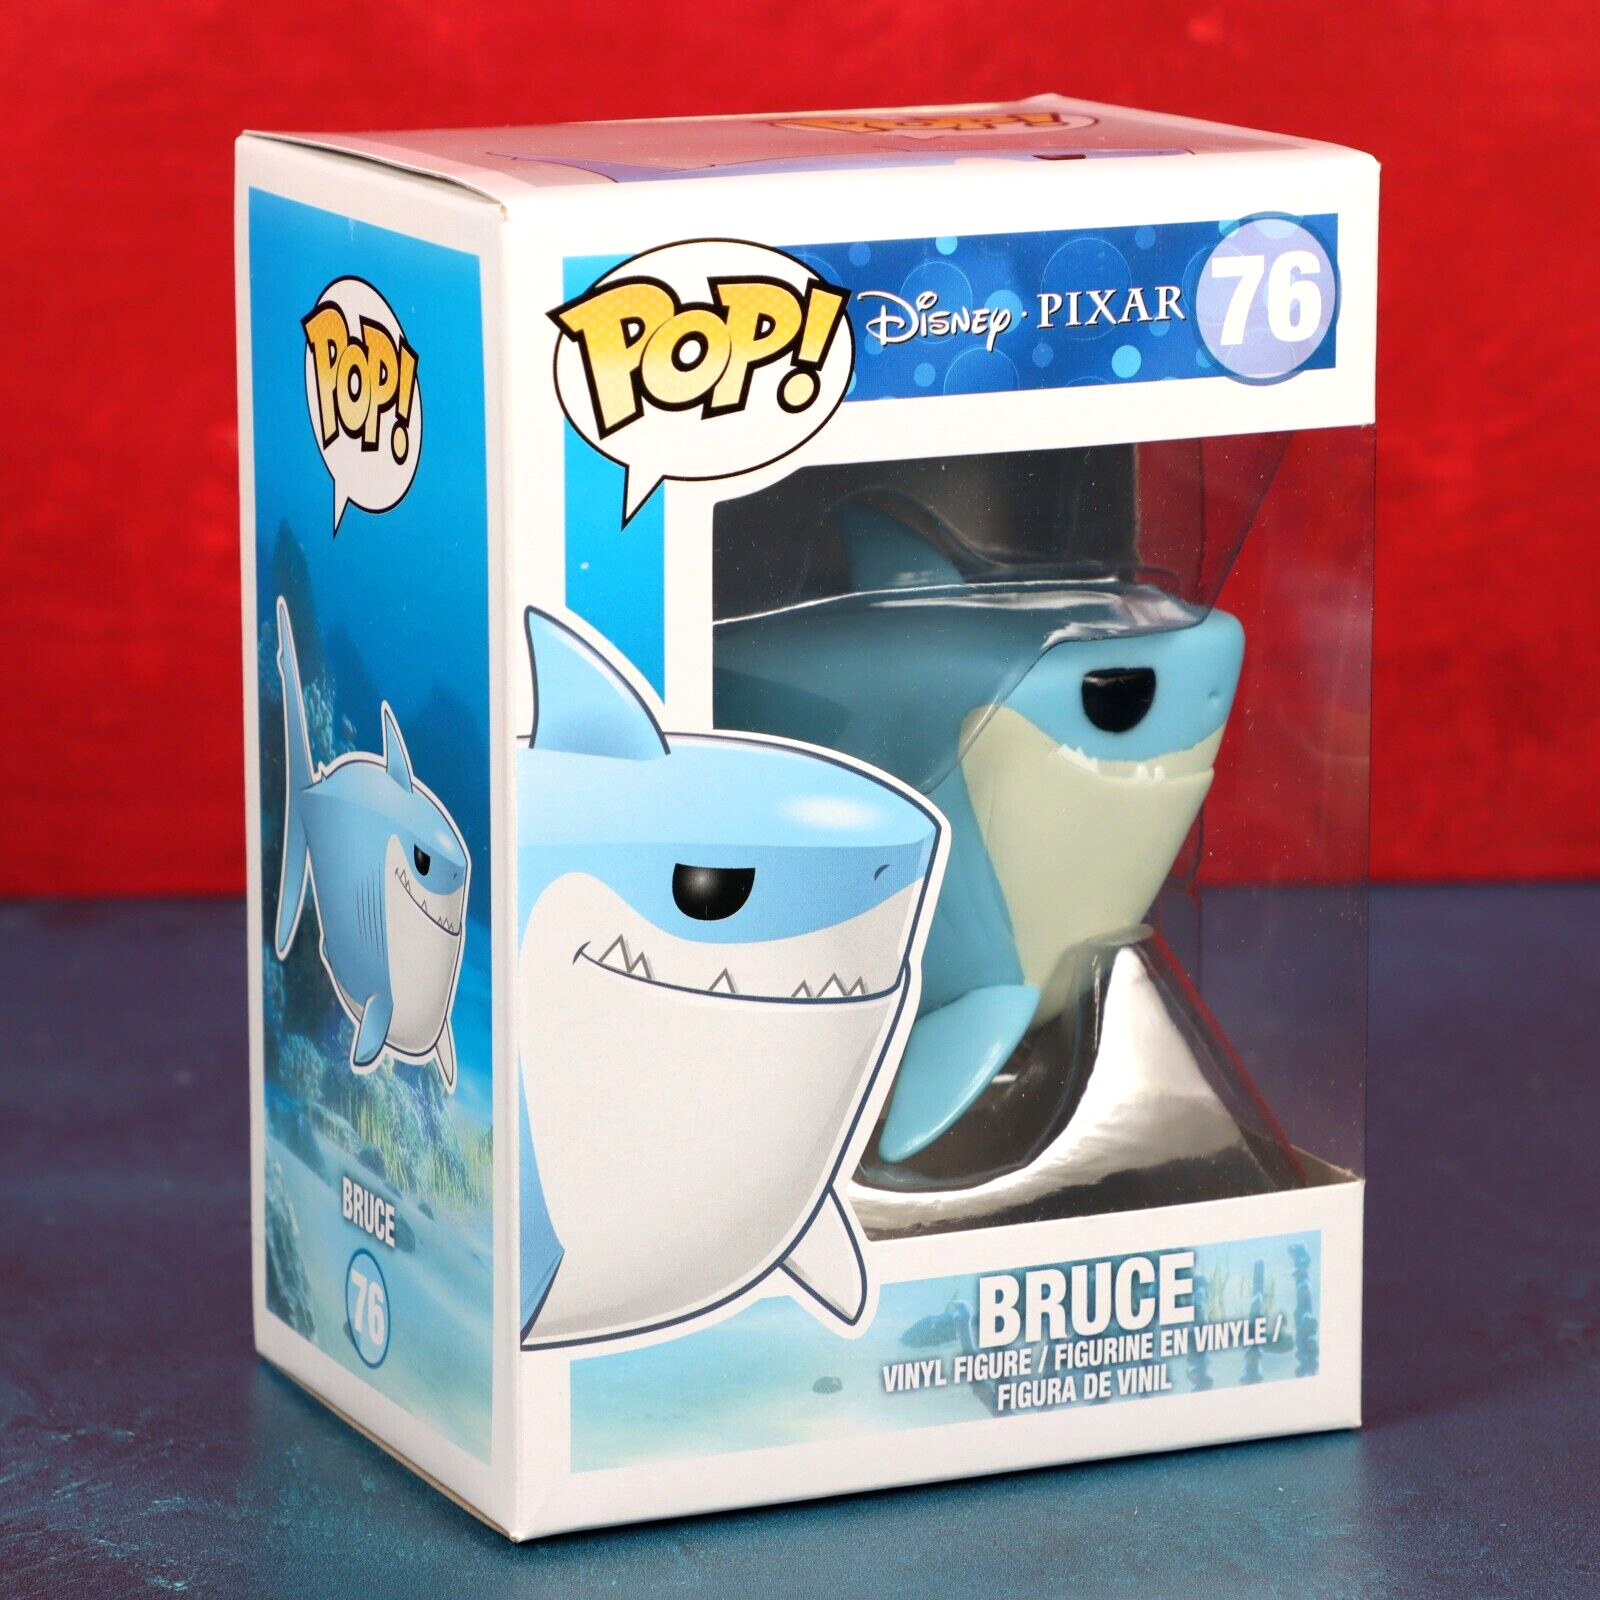 Funko Pop Vinyl Finding Nemo Bruce 76 Disney Pixar Shark 2013 With Protector